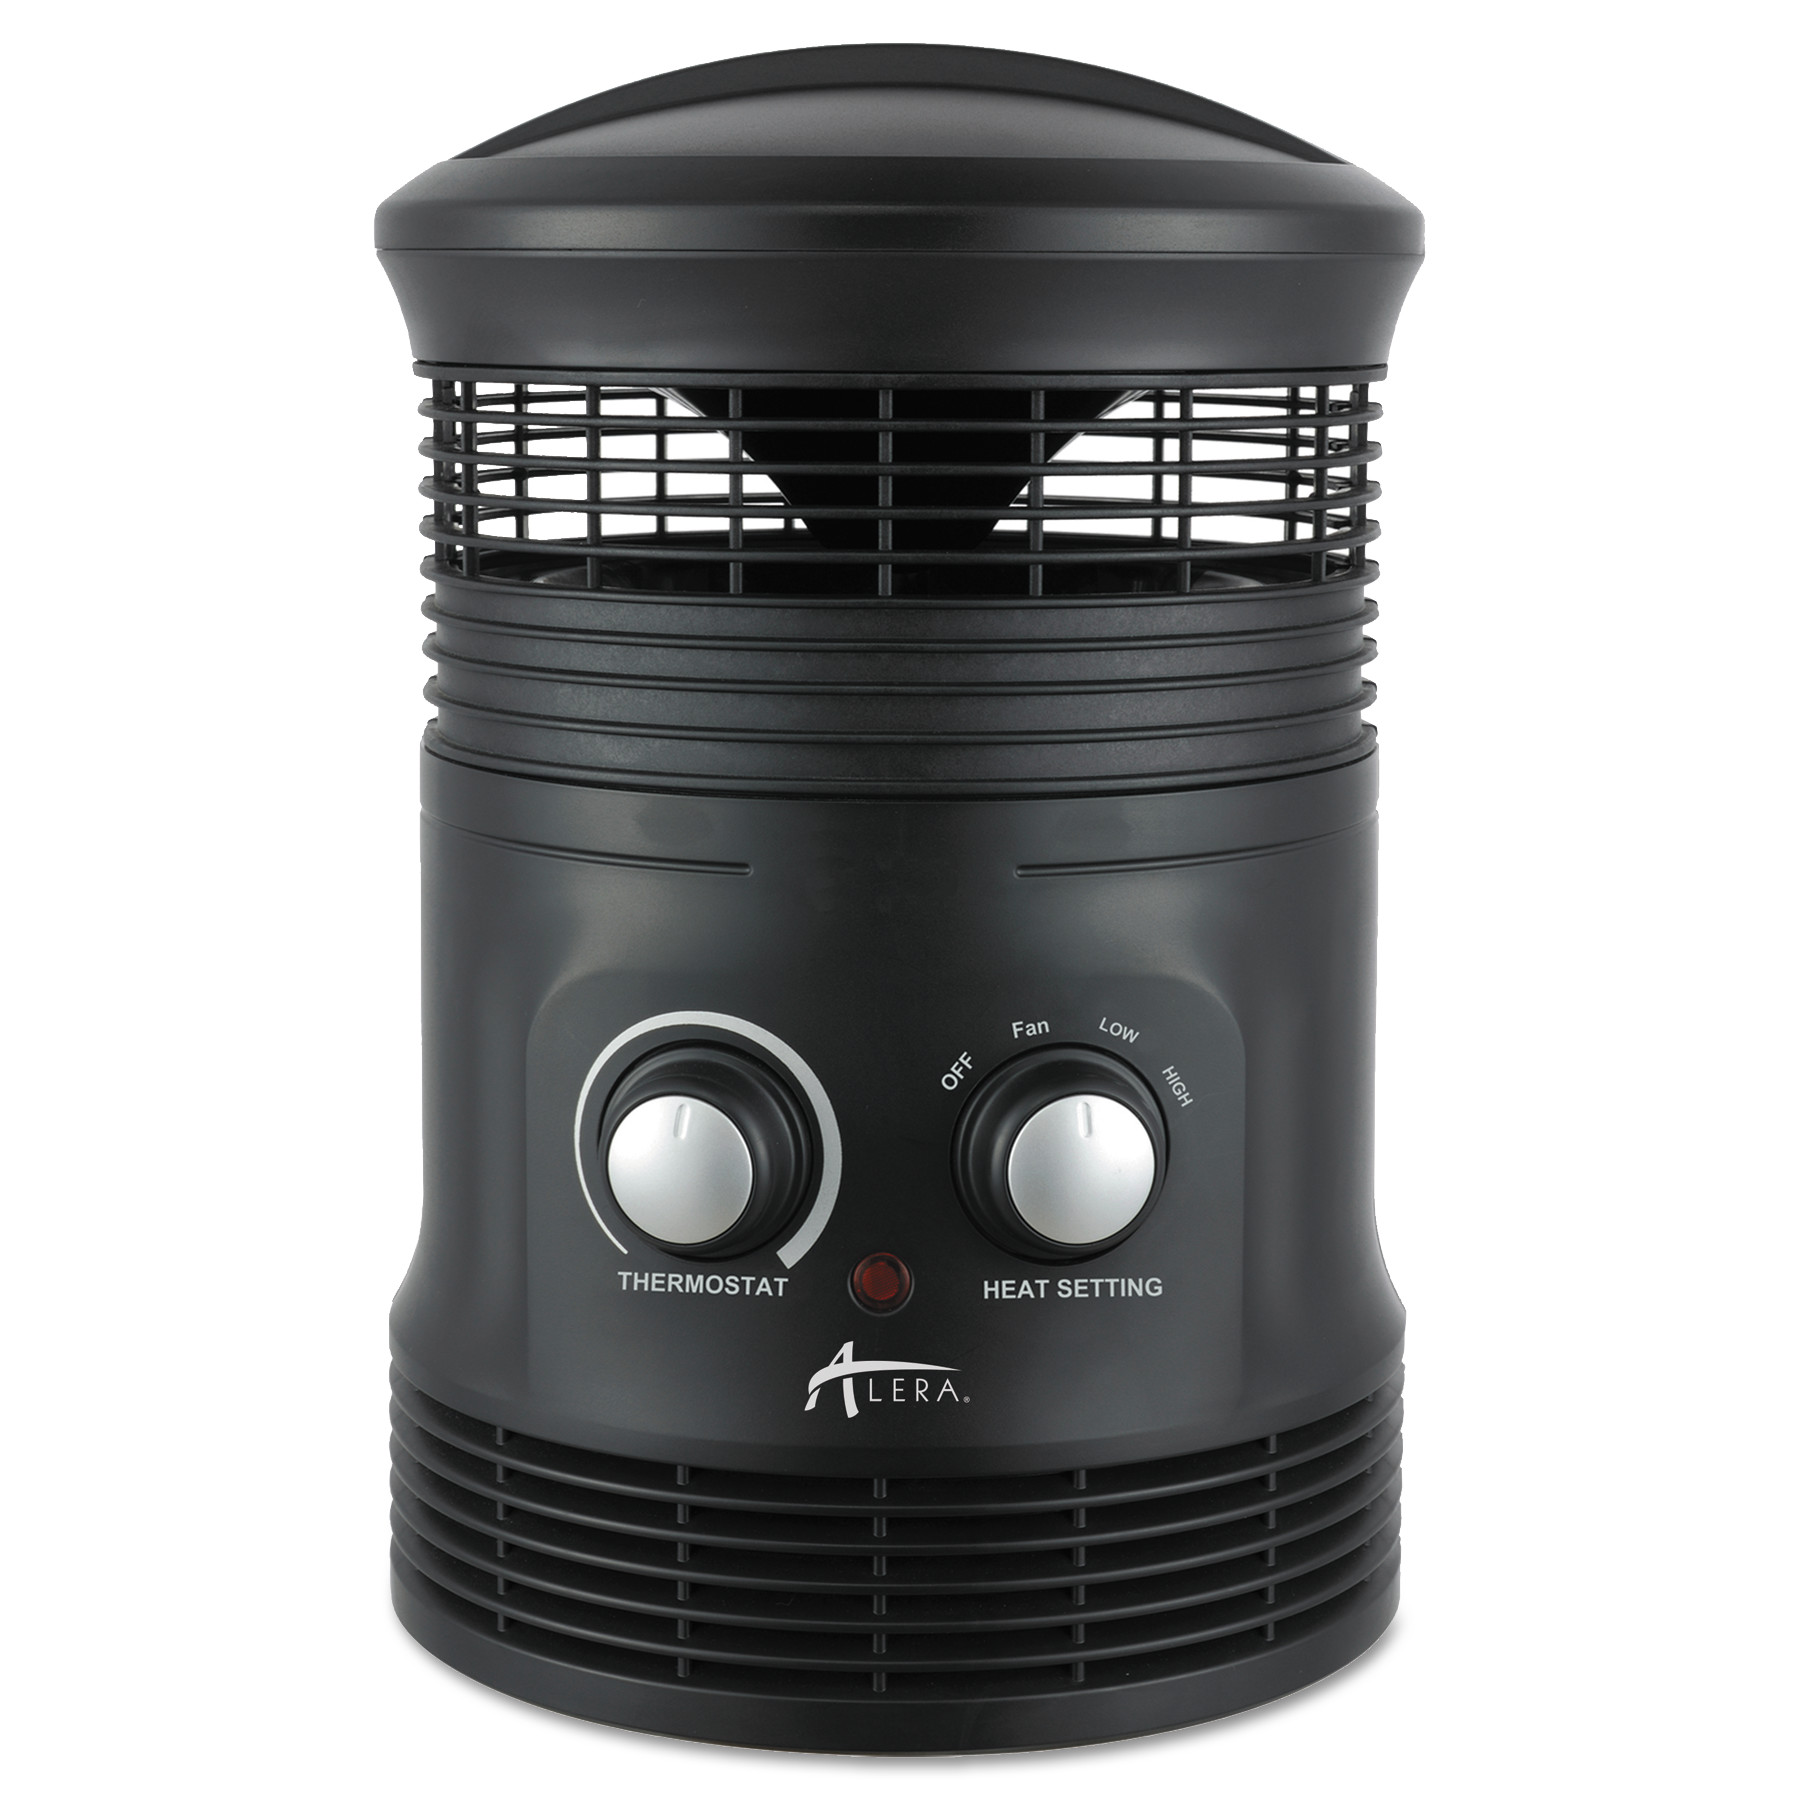  Alera HEFF360B 360 Deg Circular Fan Forced Heater, 8 x 8 x 12, Black (ALEHEFF360B) 